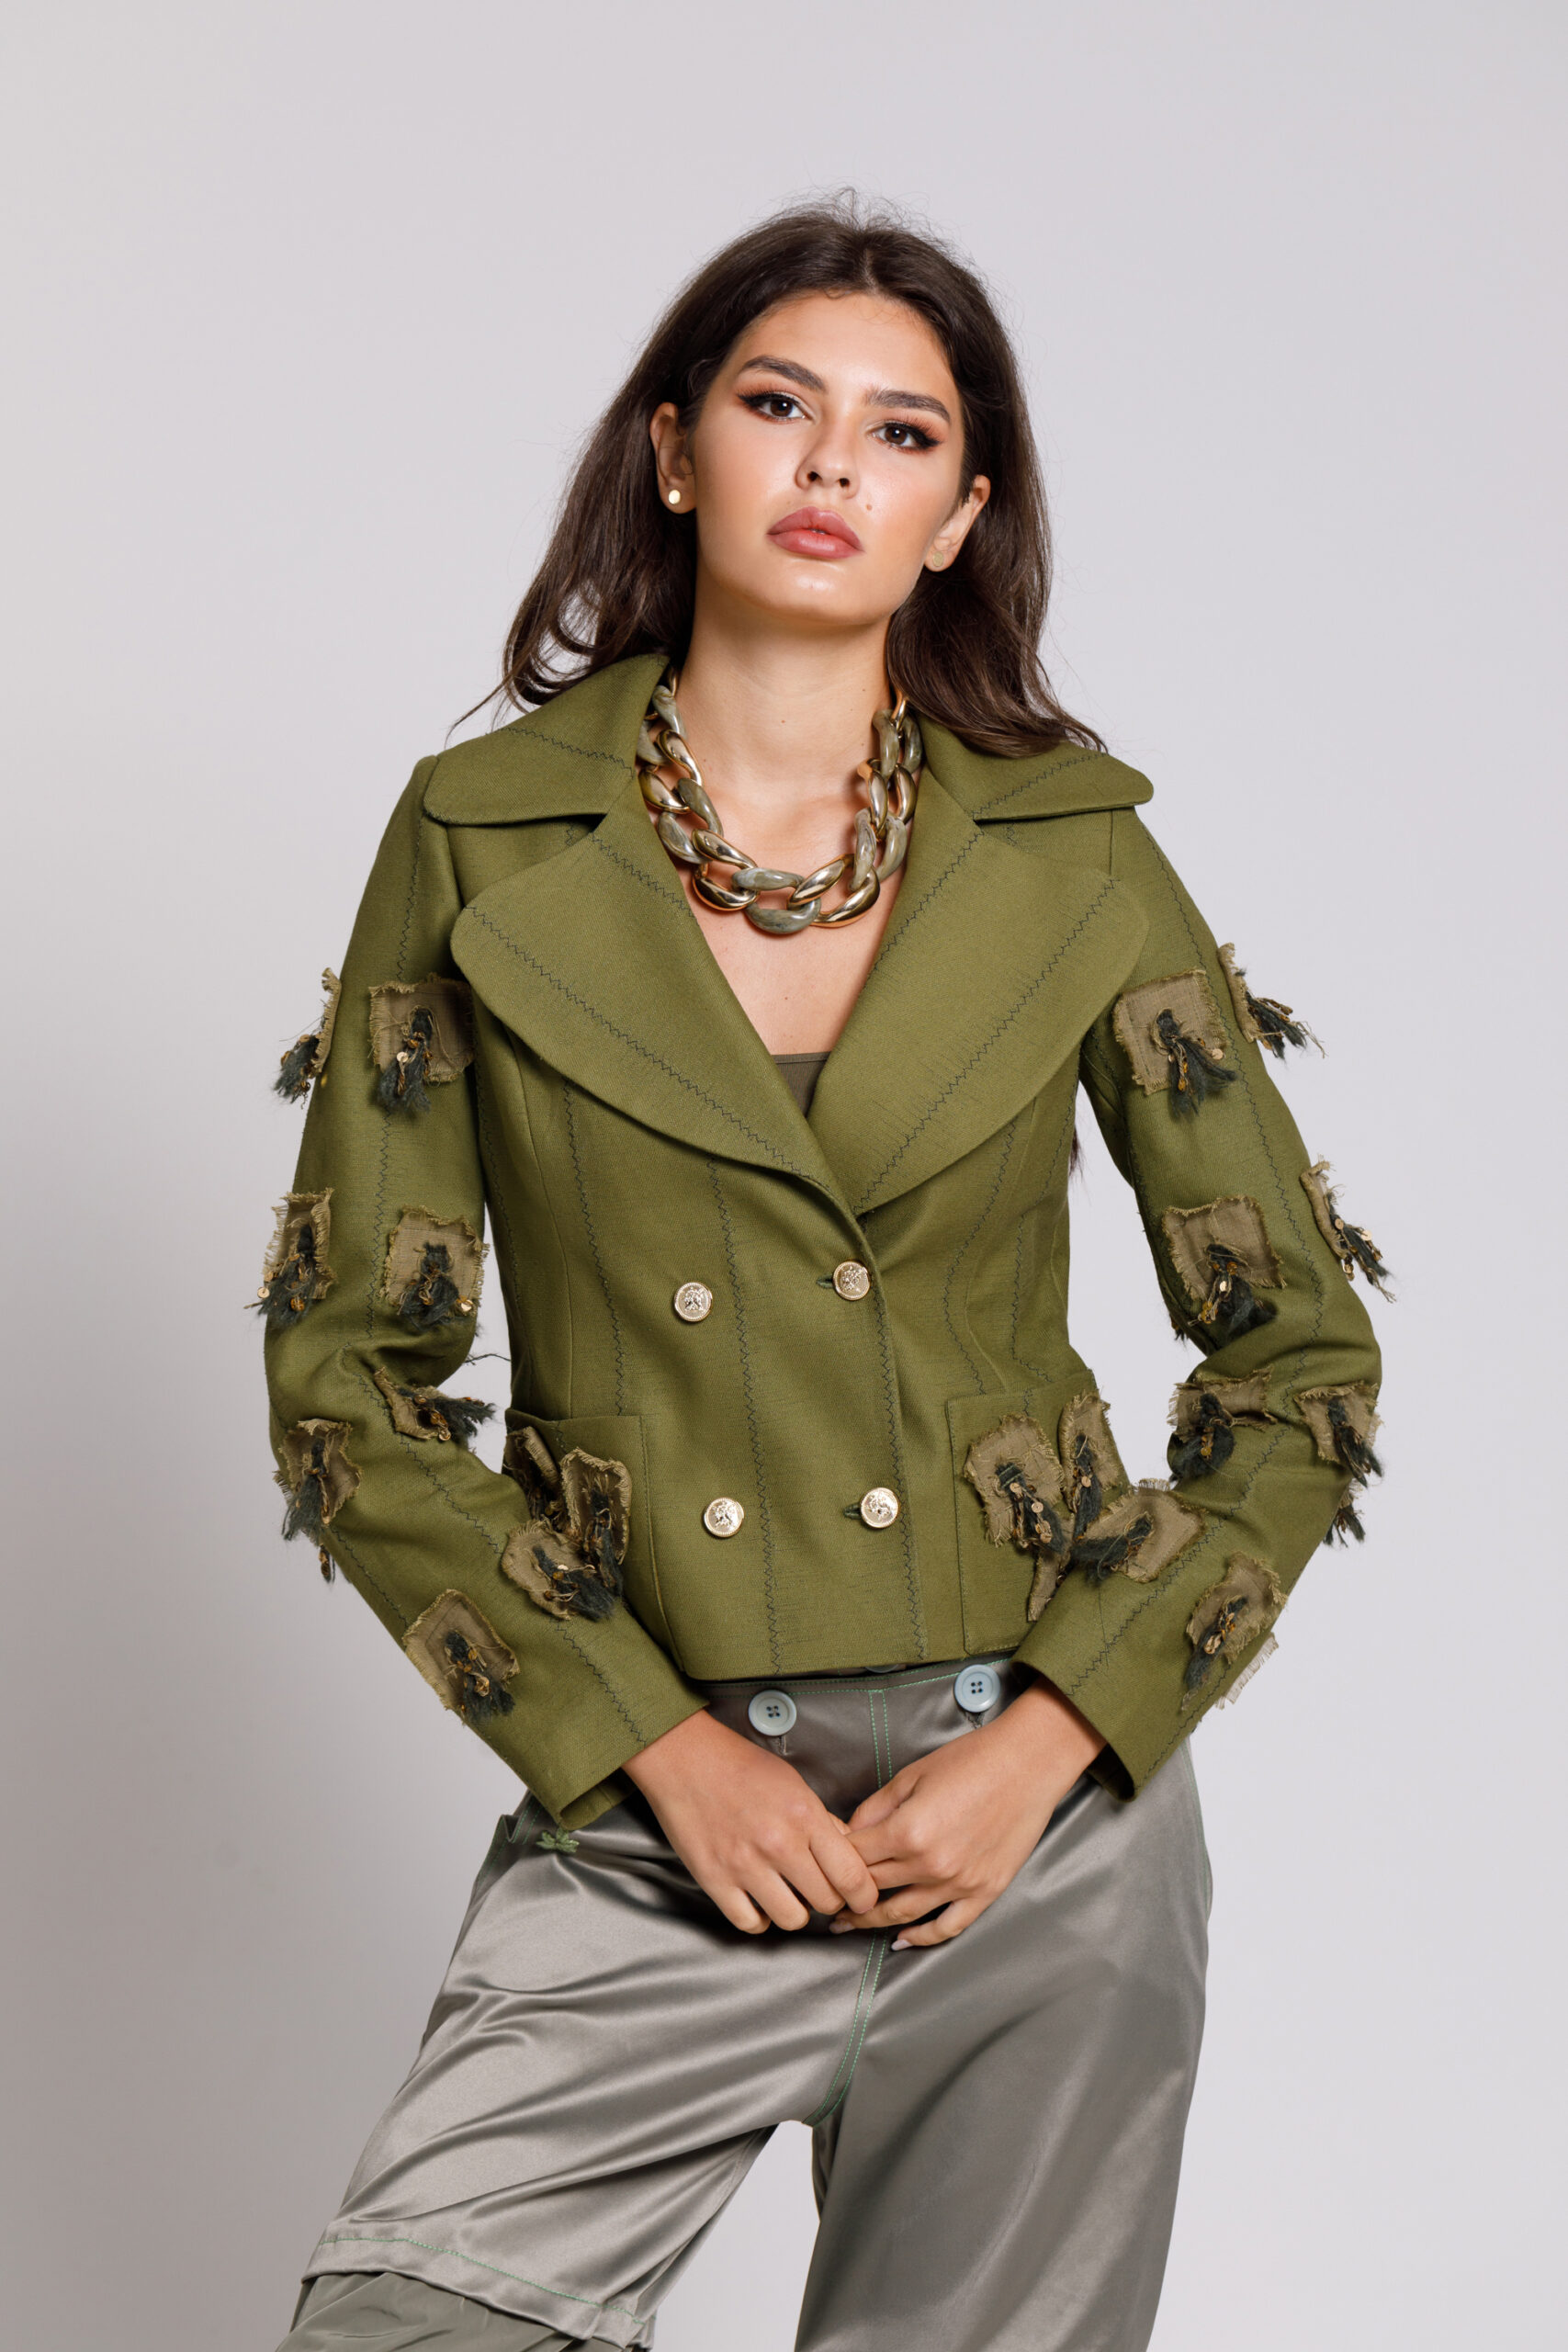 Jacheta DORA eleganta verde din doc cu aplicatii din in si paiete. Materiale naturale, design unicat, cu broderie si aplicatii handmade